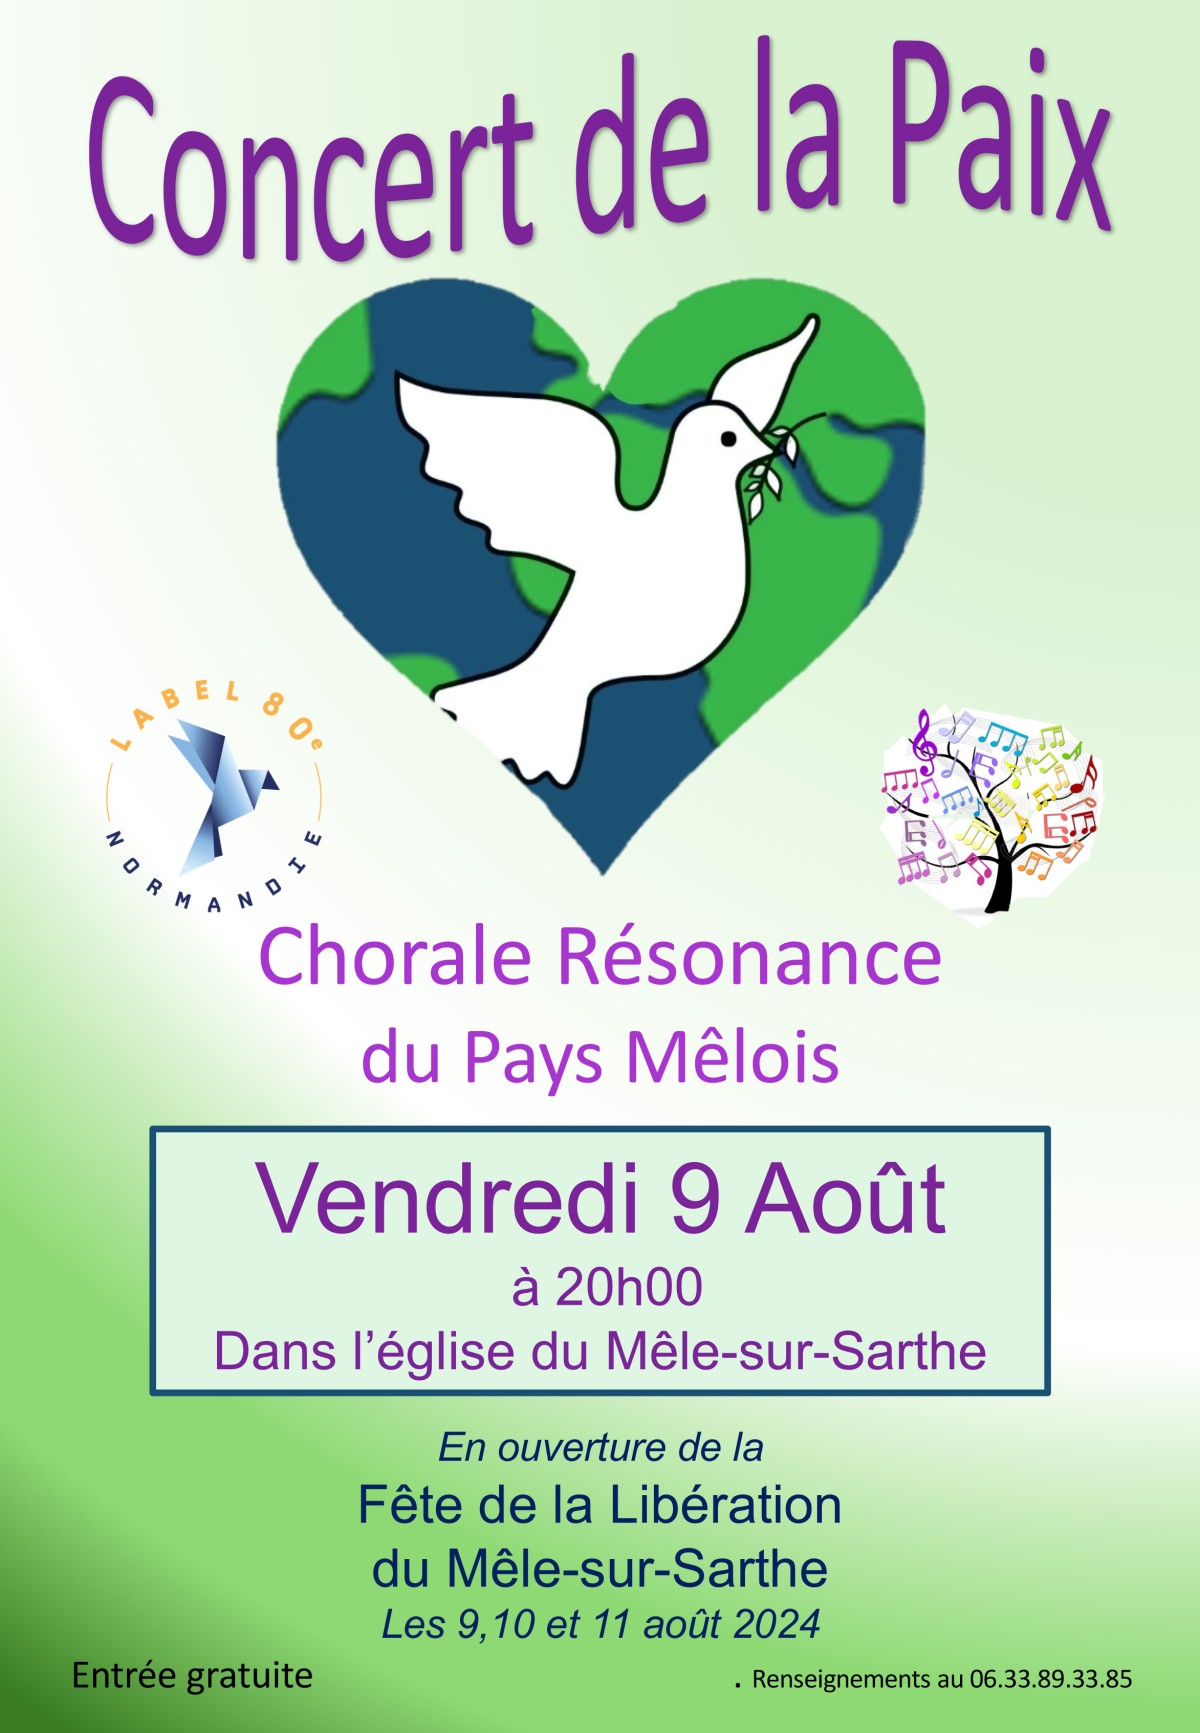 Concert de la Paix - Chorale Résonance (revue) |  association Résonnance